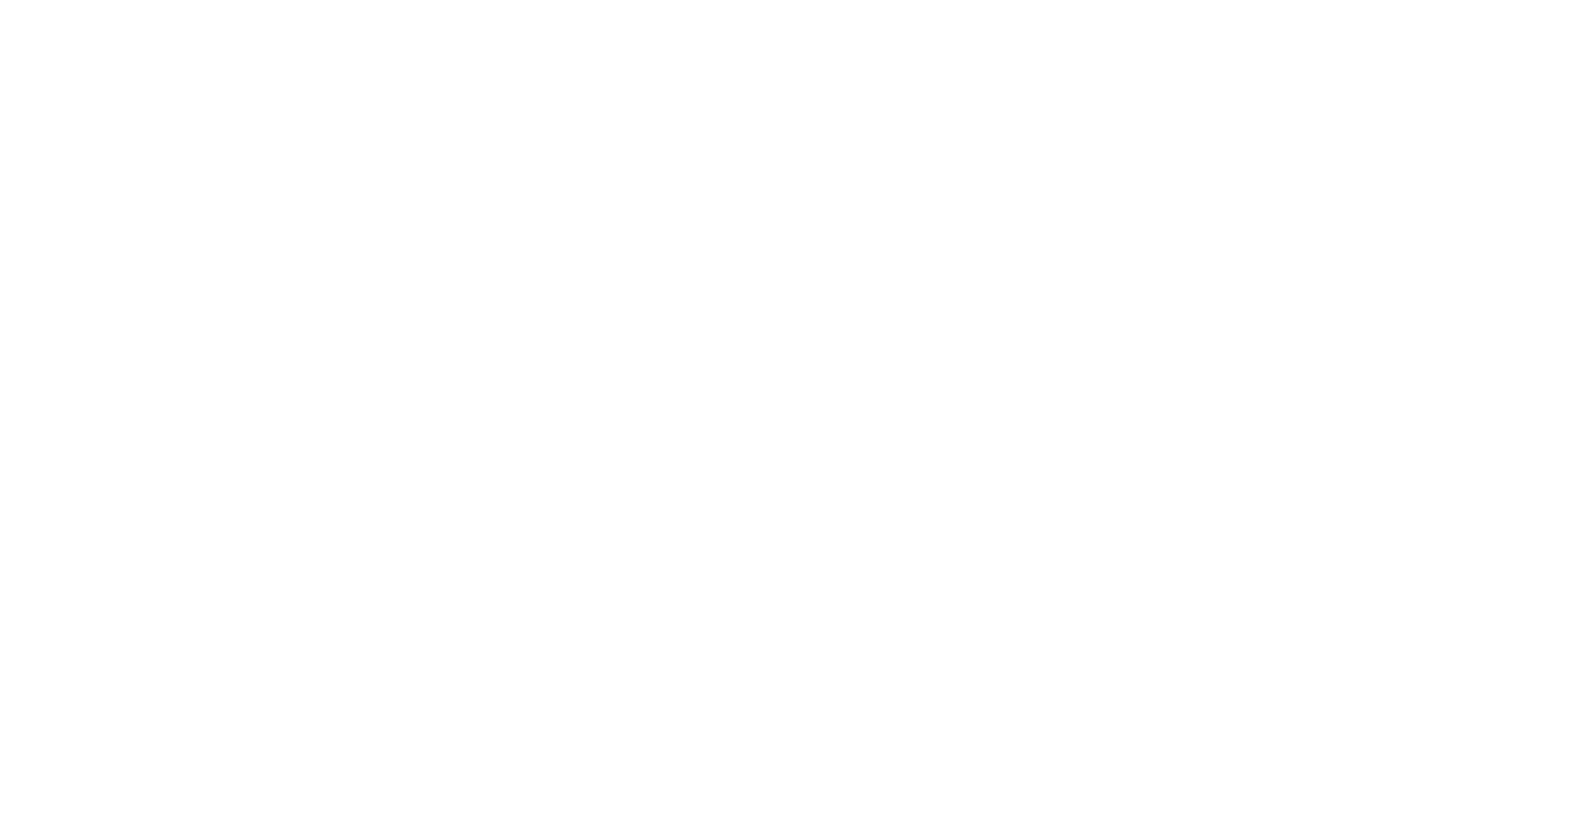 RSA Insurance Group logo grand pour les fonds sombres (PNG transparent)